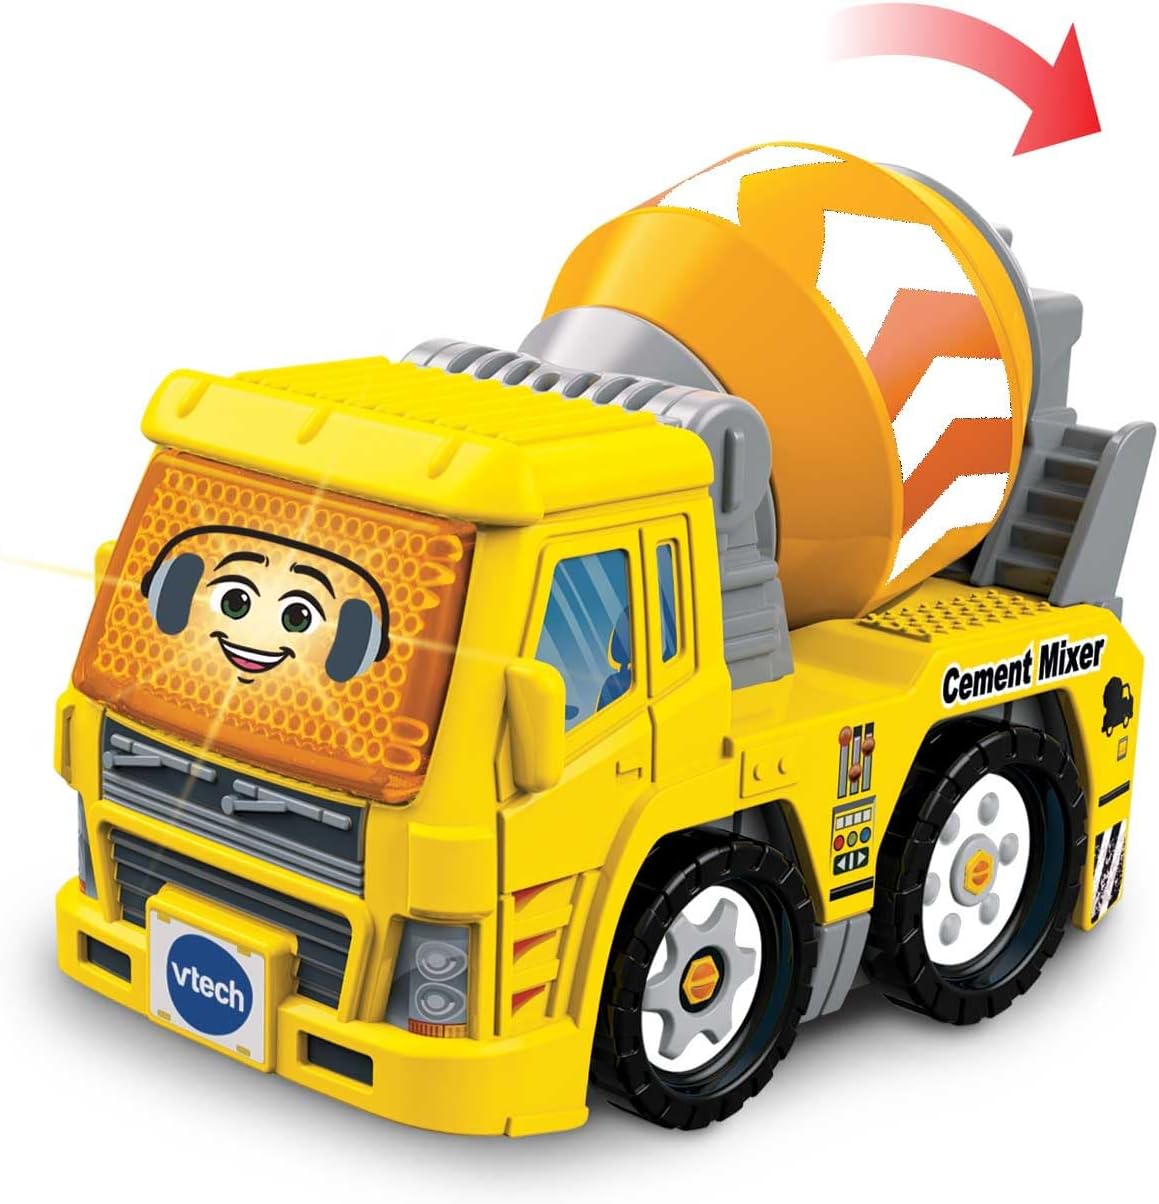 VTech Toot-Toot Drivers conversível, carro de brinquedo para 1 ano de idade, veículo de simulação com luzes e sons, brinquedo interativo para crianças por 12 meses, 2, 3, 4 +, versão em inglês